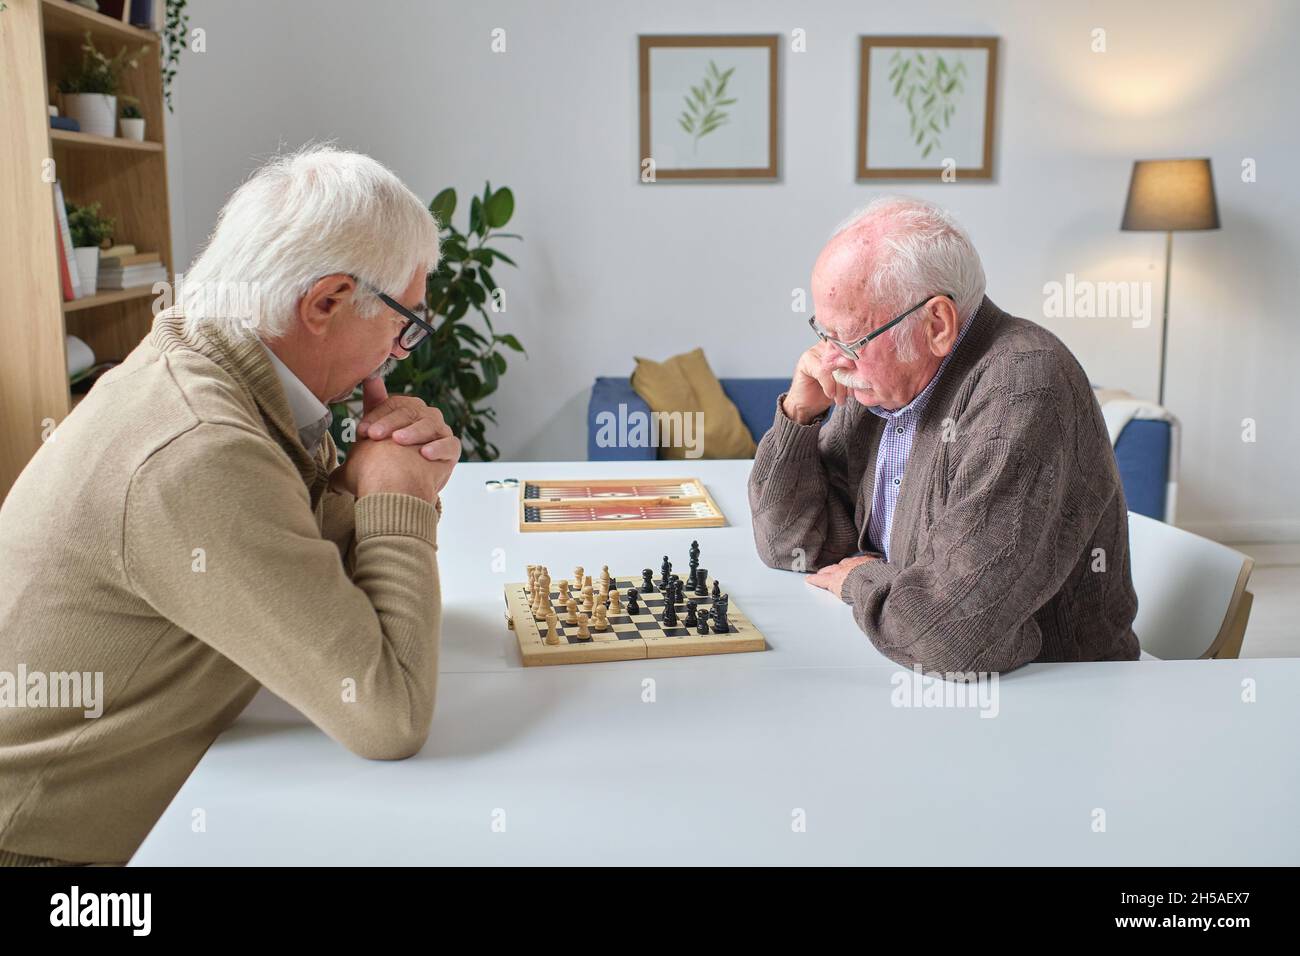 Zwei ältere Männer sitzen am Tisch und spielen gemeinsam im Raum Schach Stockfoto